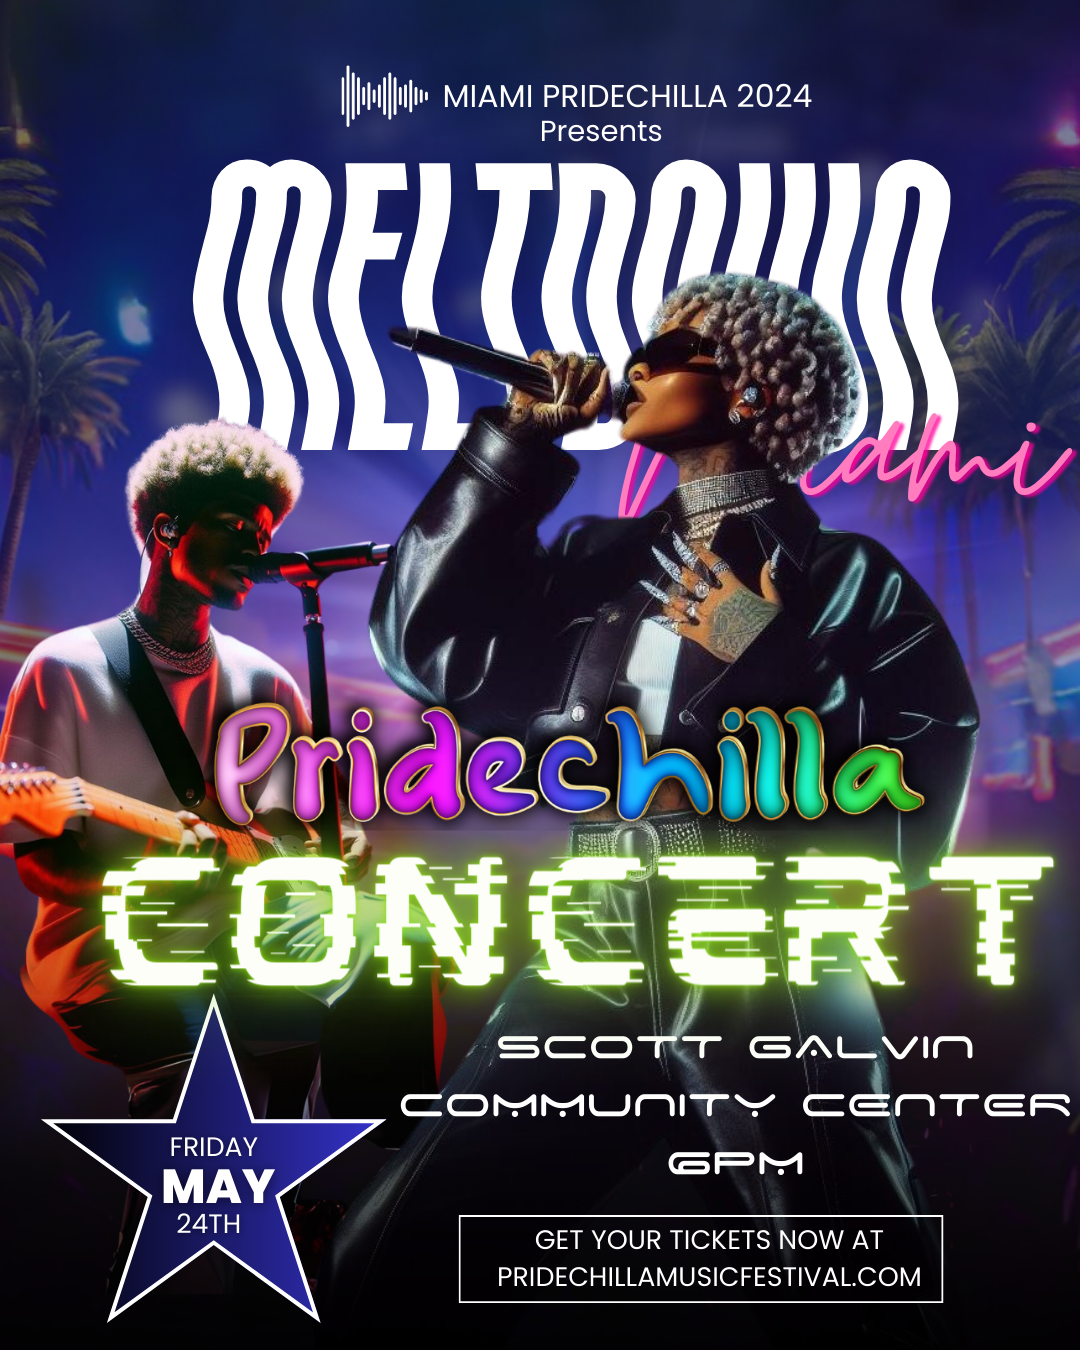 Meltdown Miami Pridechilla Concert  on mai 24, 20:00@TBA - Achetez des billets et obtenez des informations surAfro Pride Federation pridechillamusicfestival